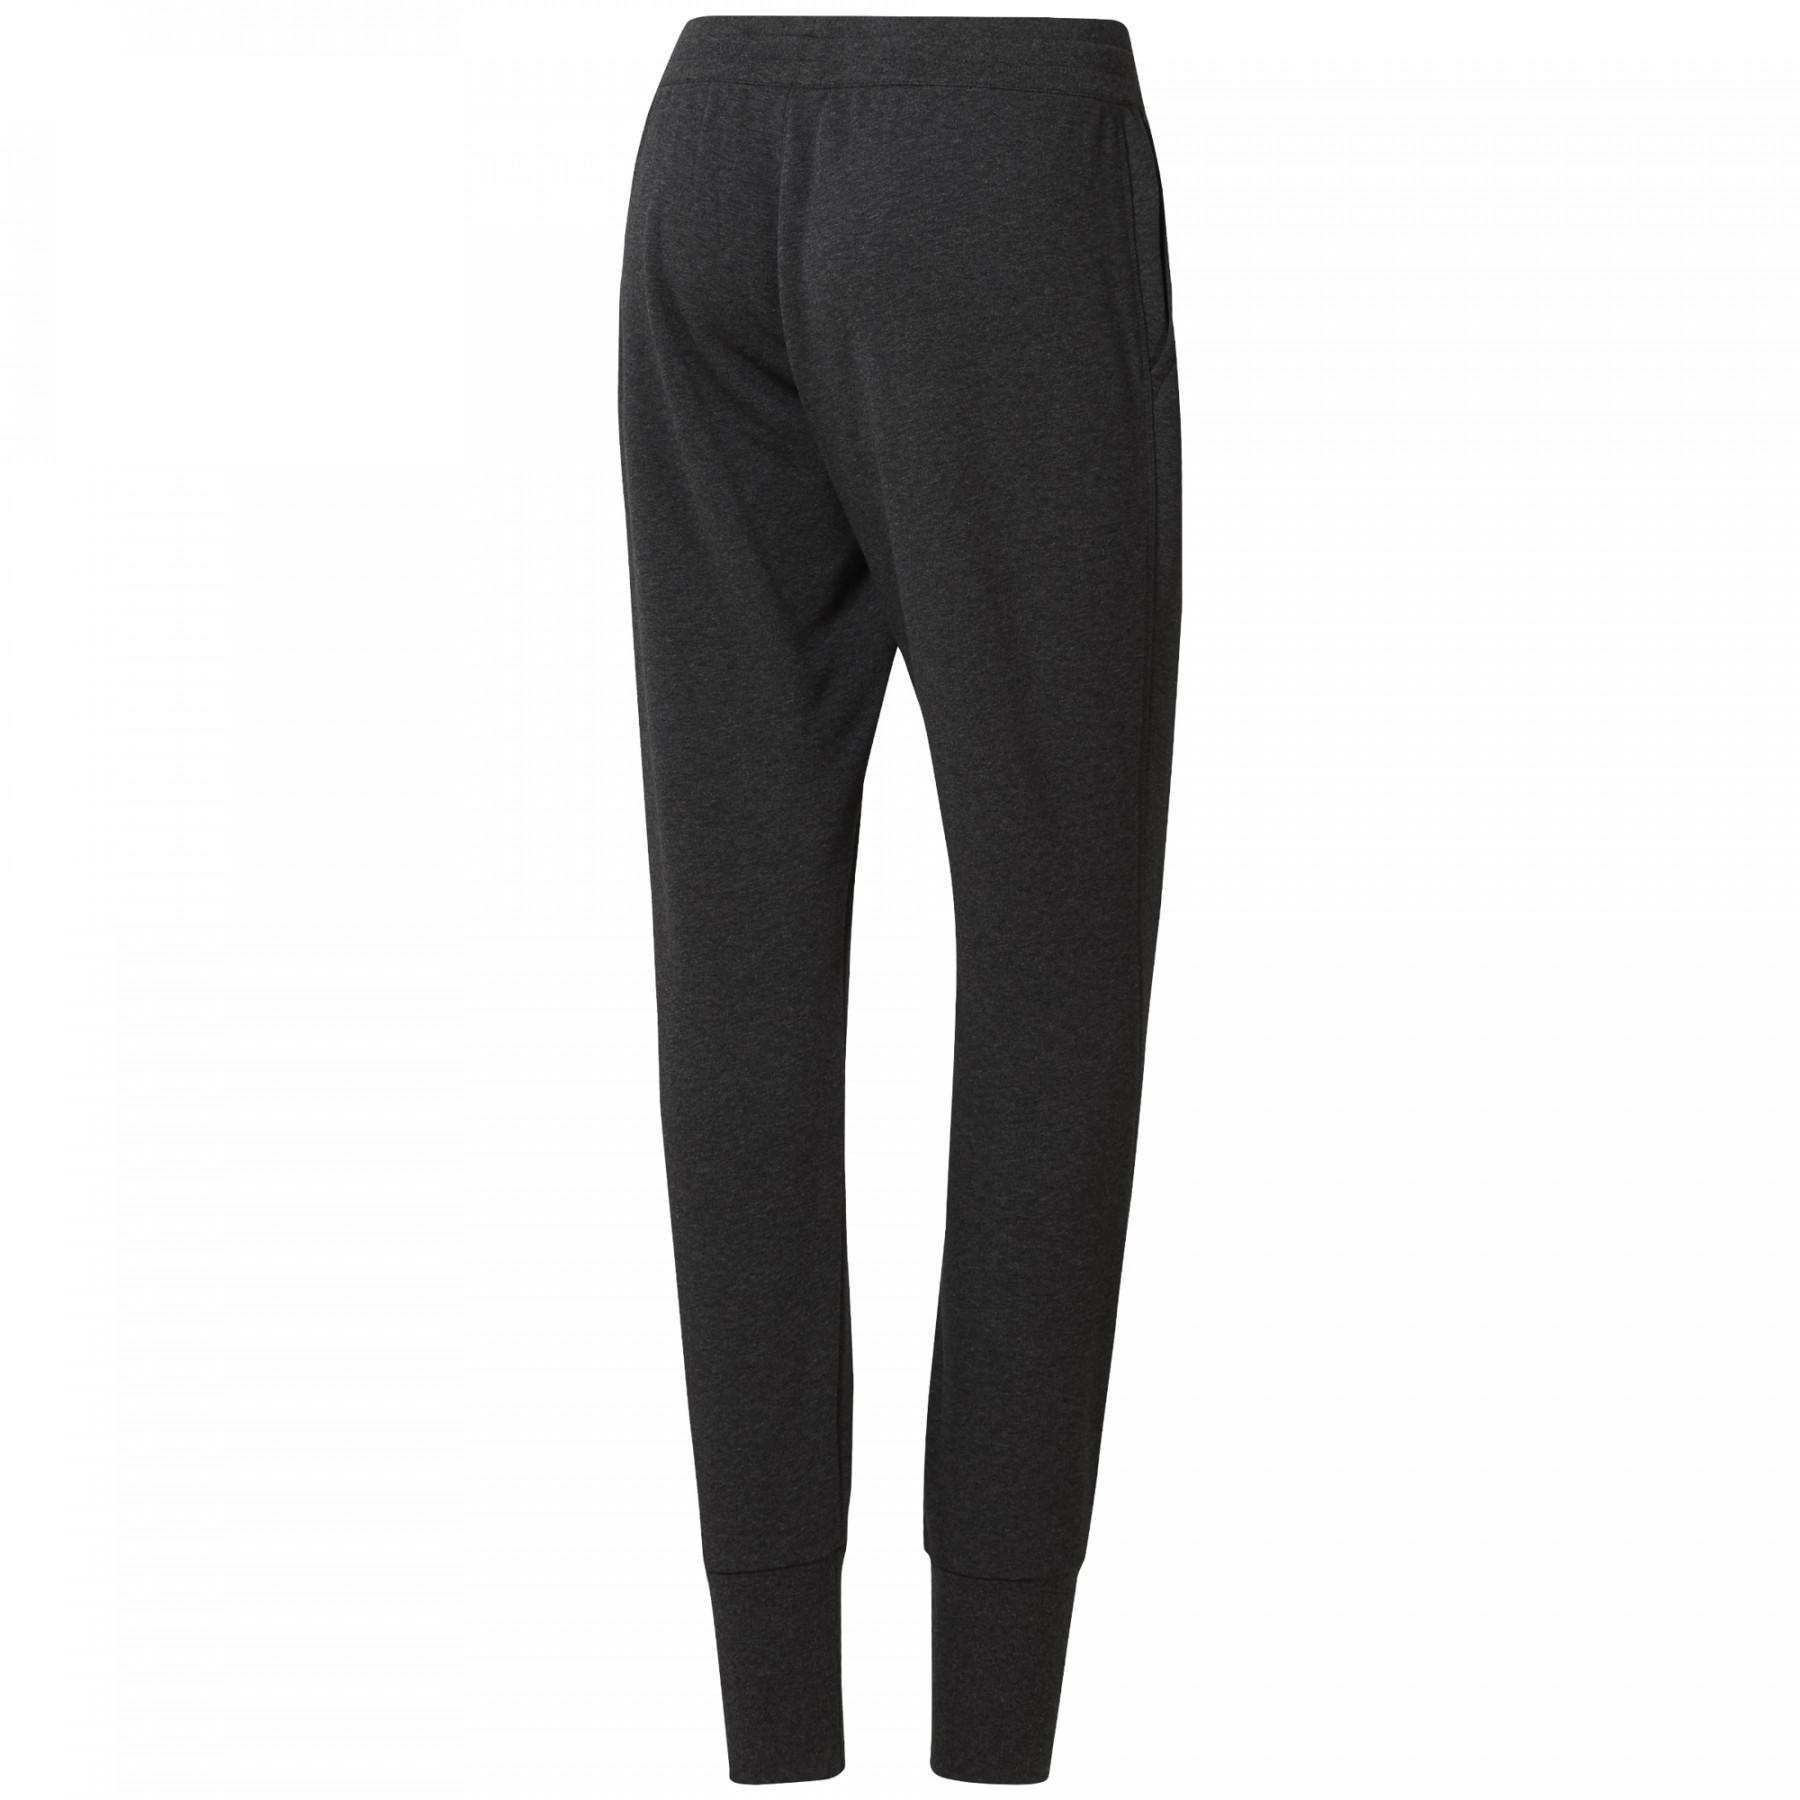 Women's trousers Reebok CrossFit®